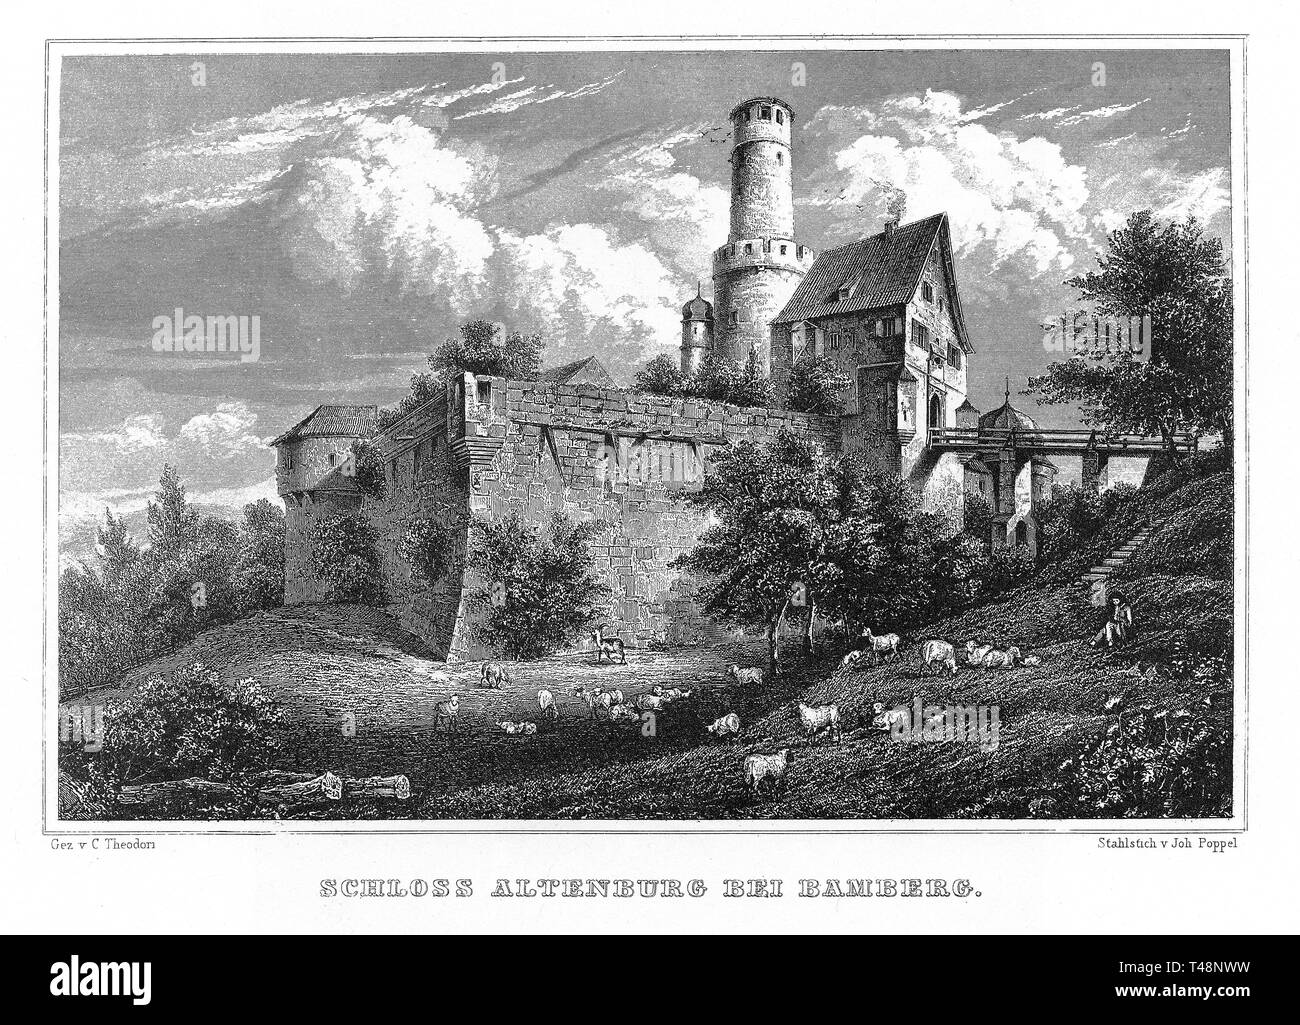 Altenburg, Bamberg, Zeichnung von C. Theodori, Stahlstich von J. Poppel, 1840-54, Königreich Bayern, Deutschland Stockfoto